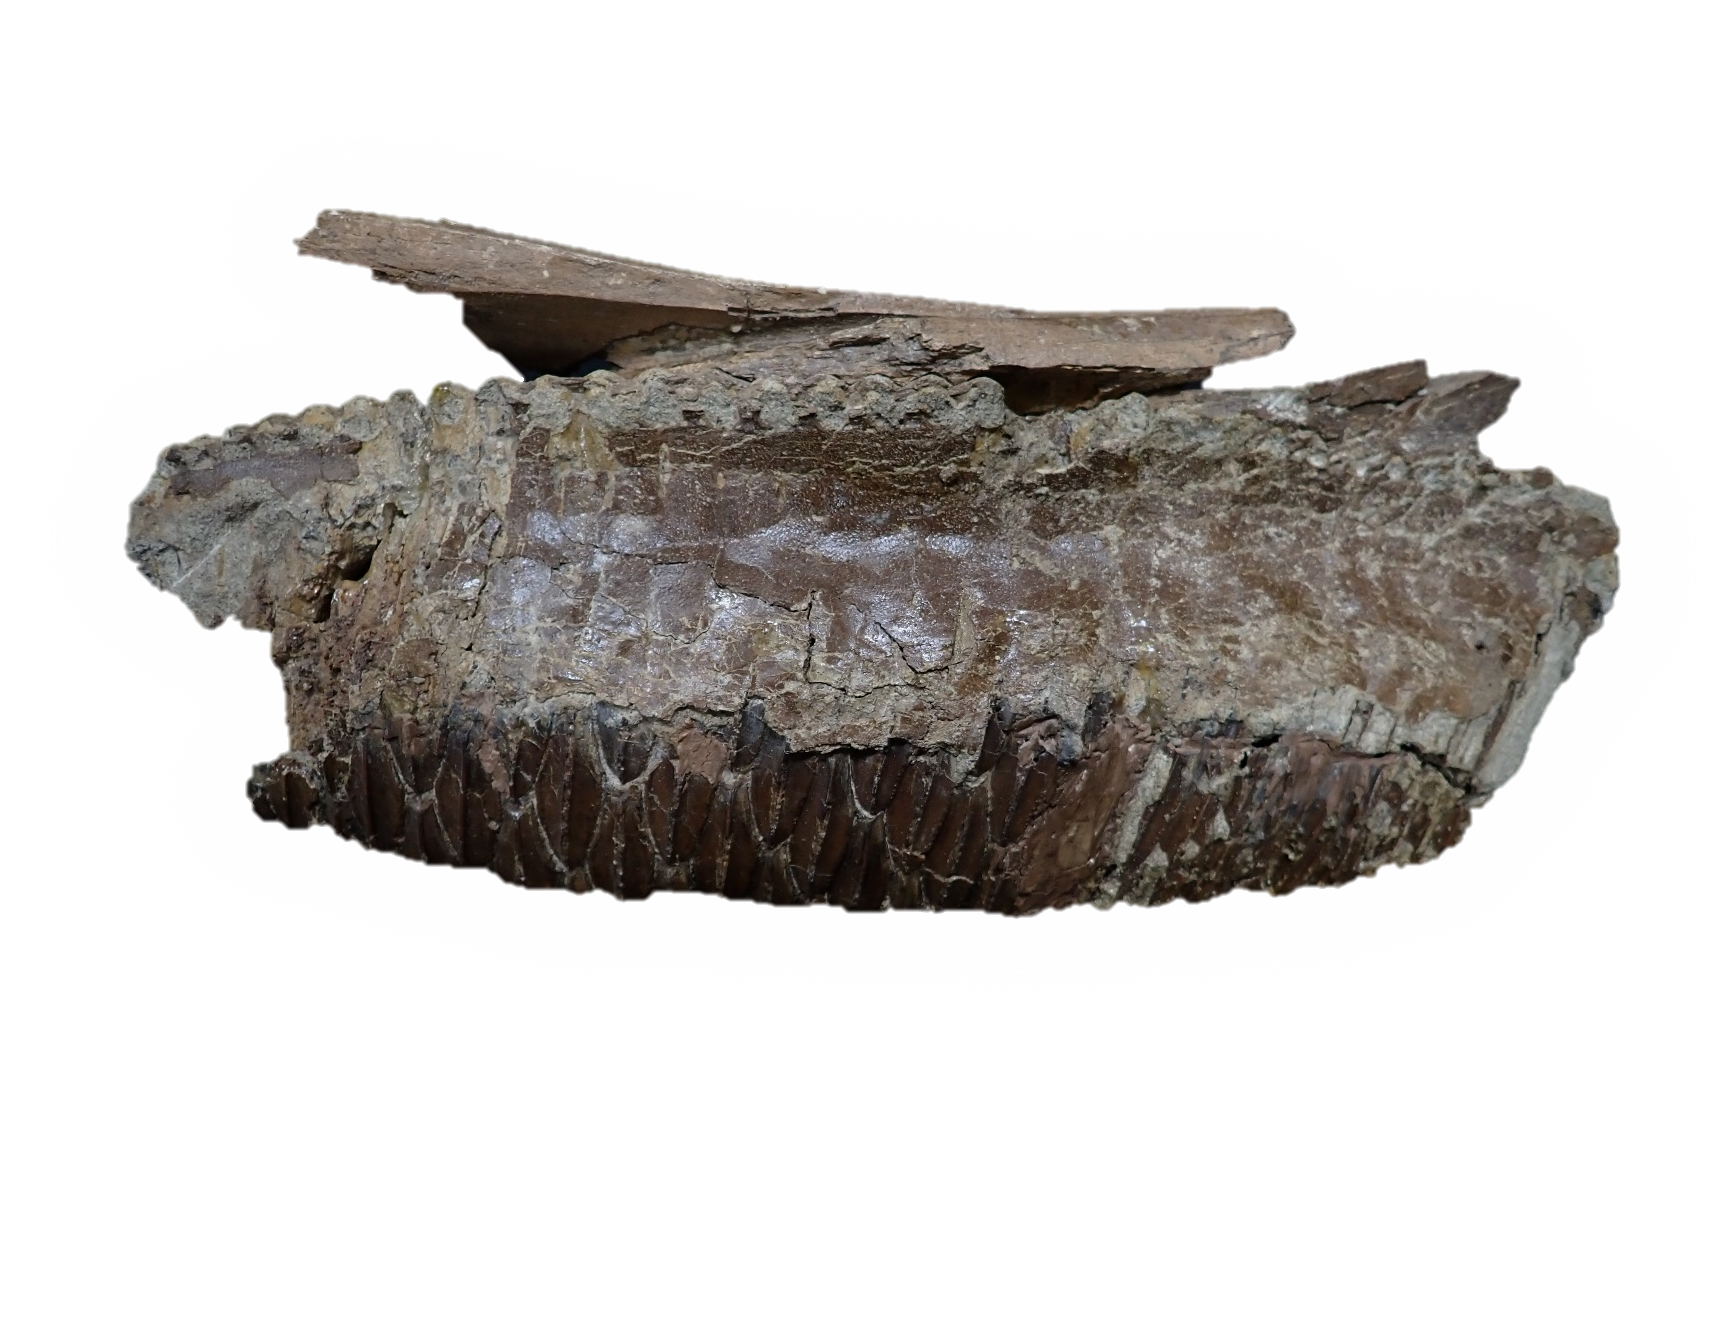 3.ハドロサウルス類の歯